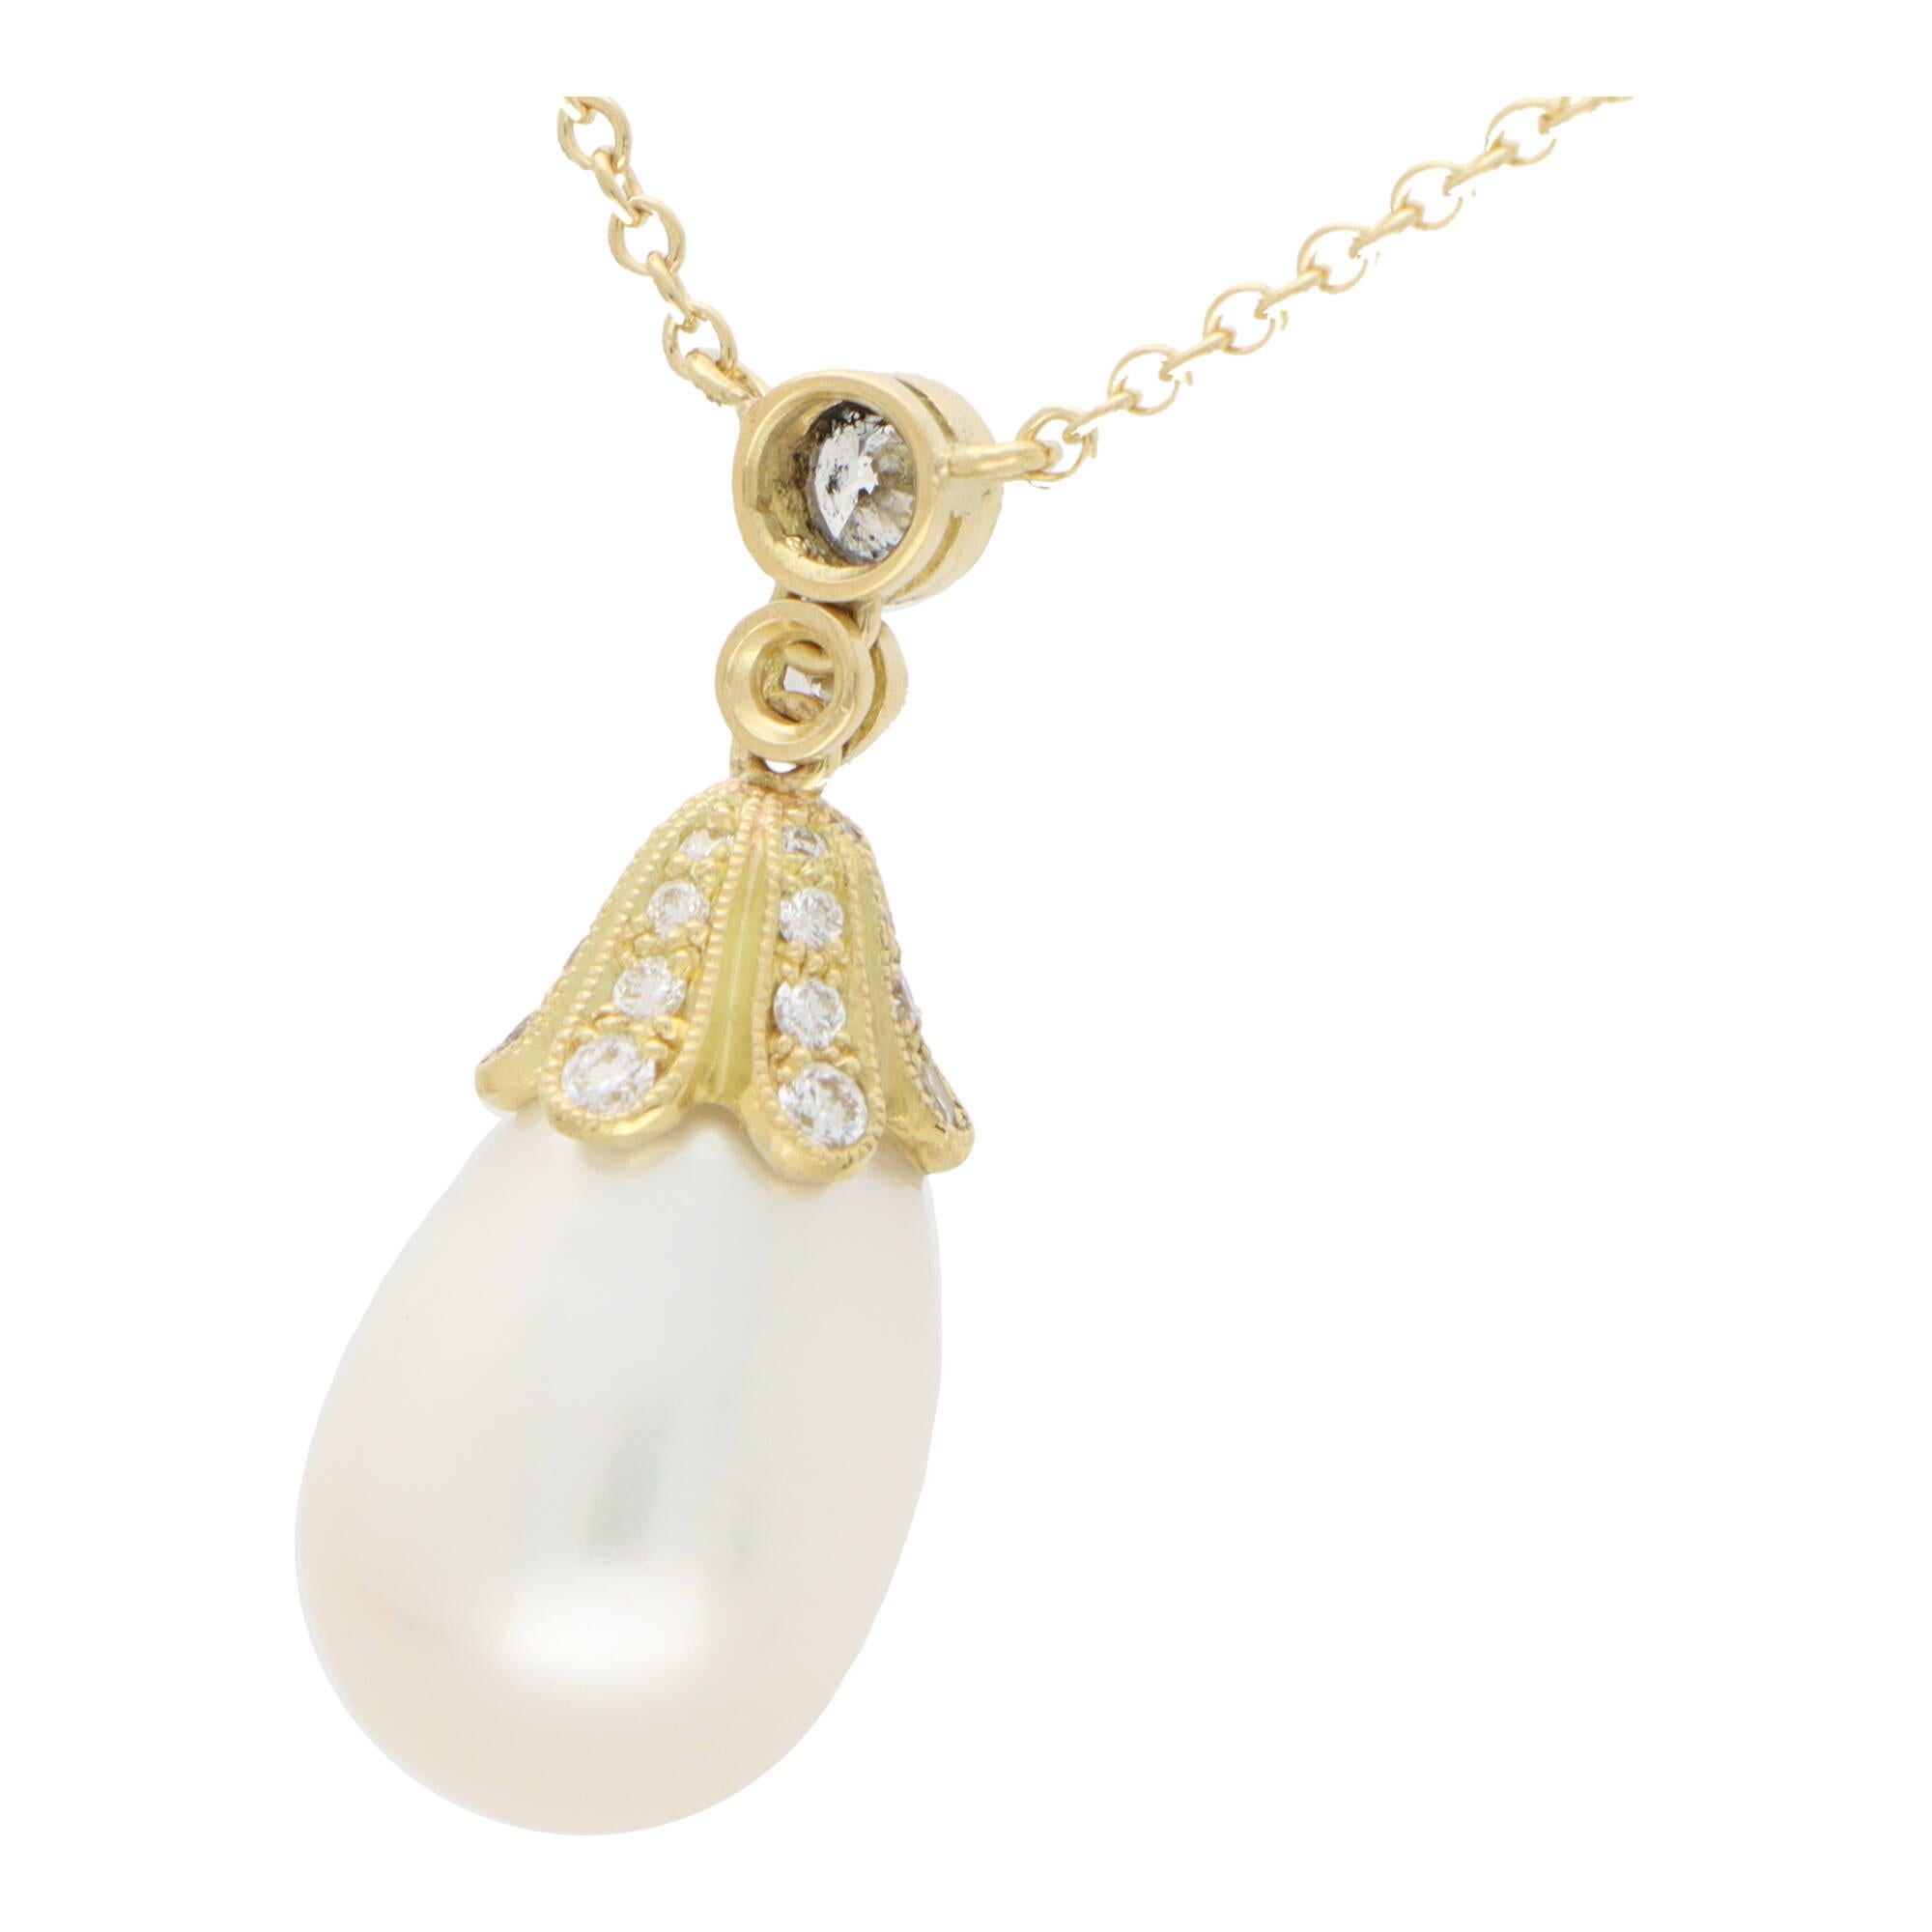 Ein fabelhaftes Collier mit Perlen- und Diamantanhängern aus 18 Karat Gelbgold.

Der Anhänger zeichnet sich durch eine 10 x 12 Millimeter große, tropfenförmige Perle aus, die elegant an einer diamantbesetzten Kappe und einem diamantbesetzten Bügel